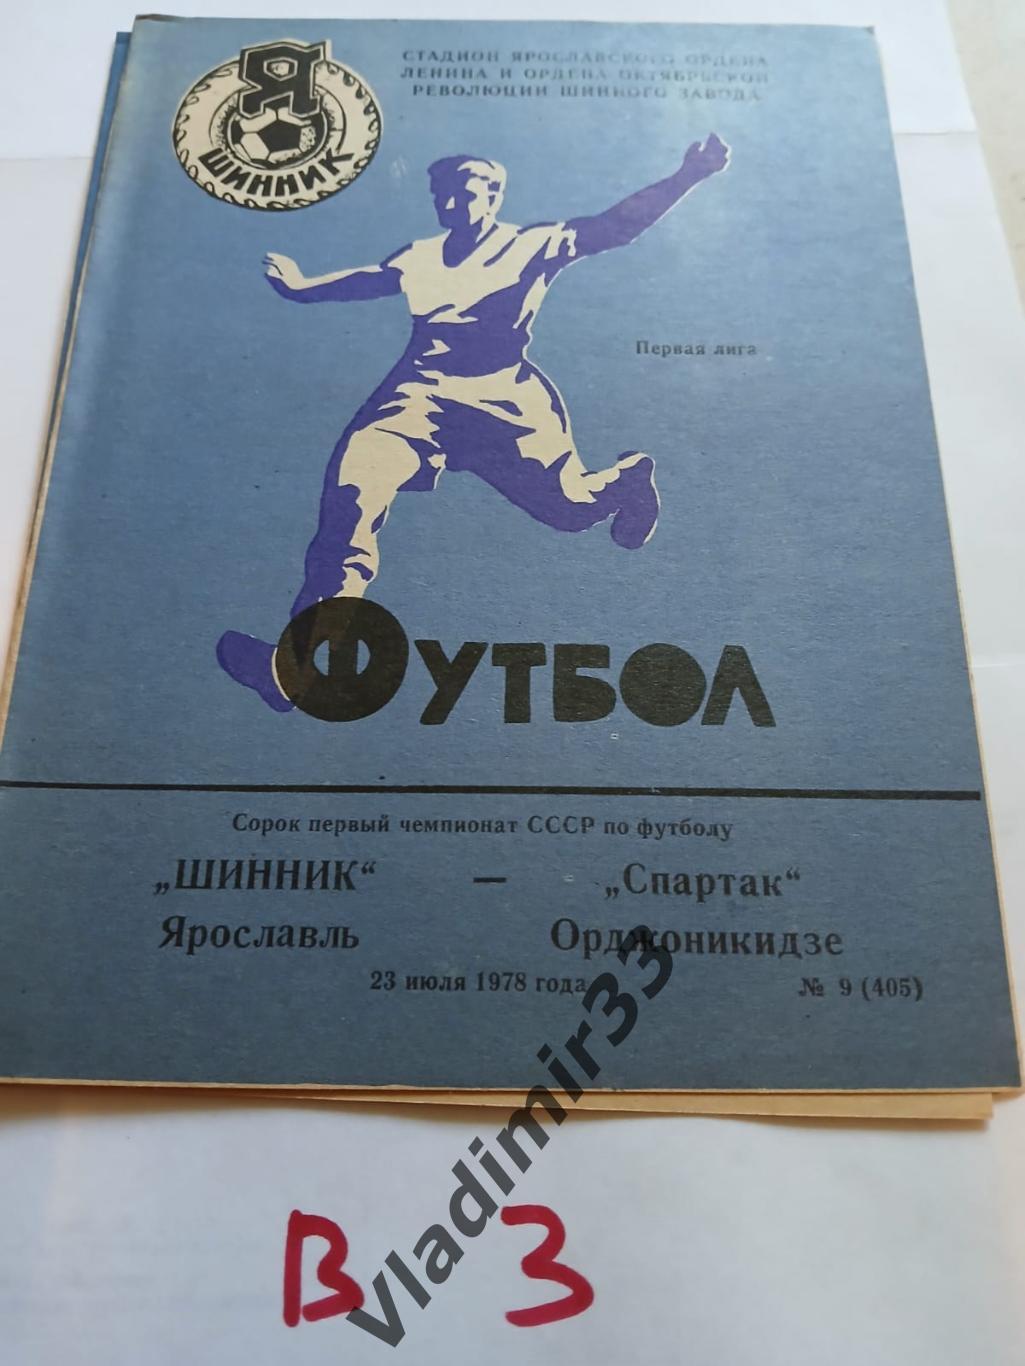 Шинник Ярославль - Спартак Орджоникидзе 1978